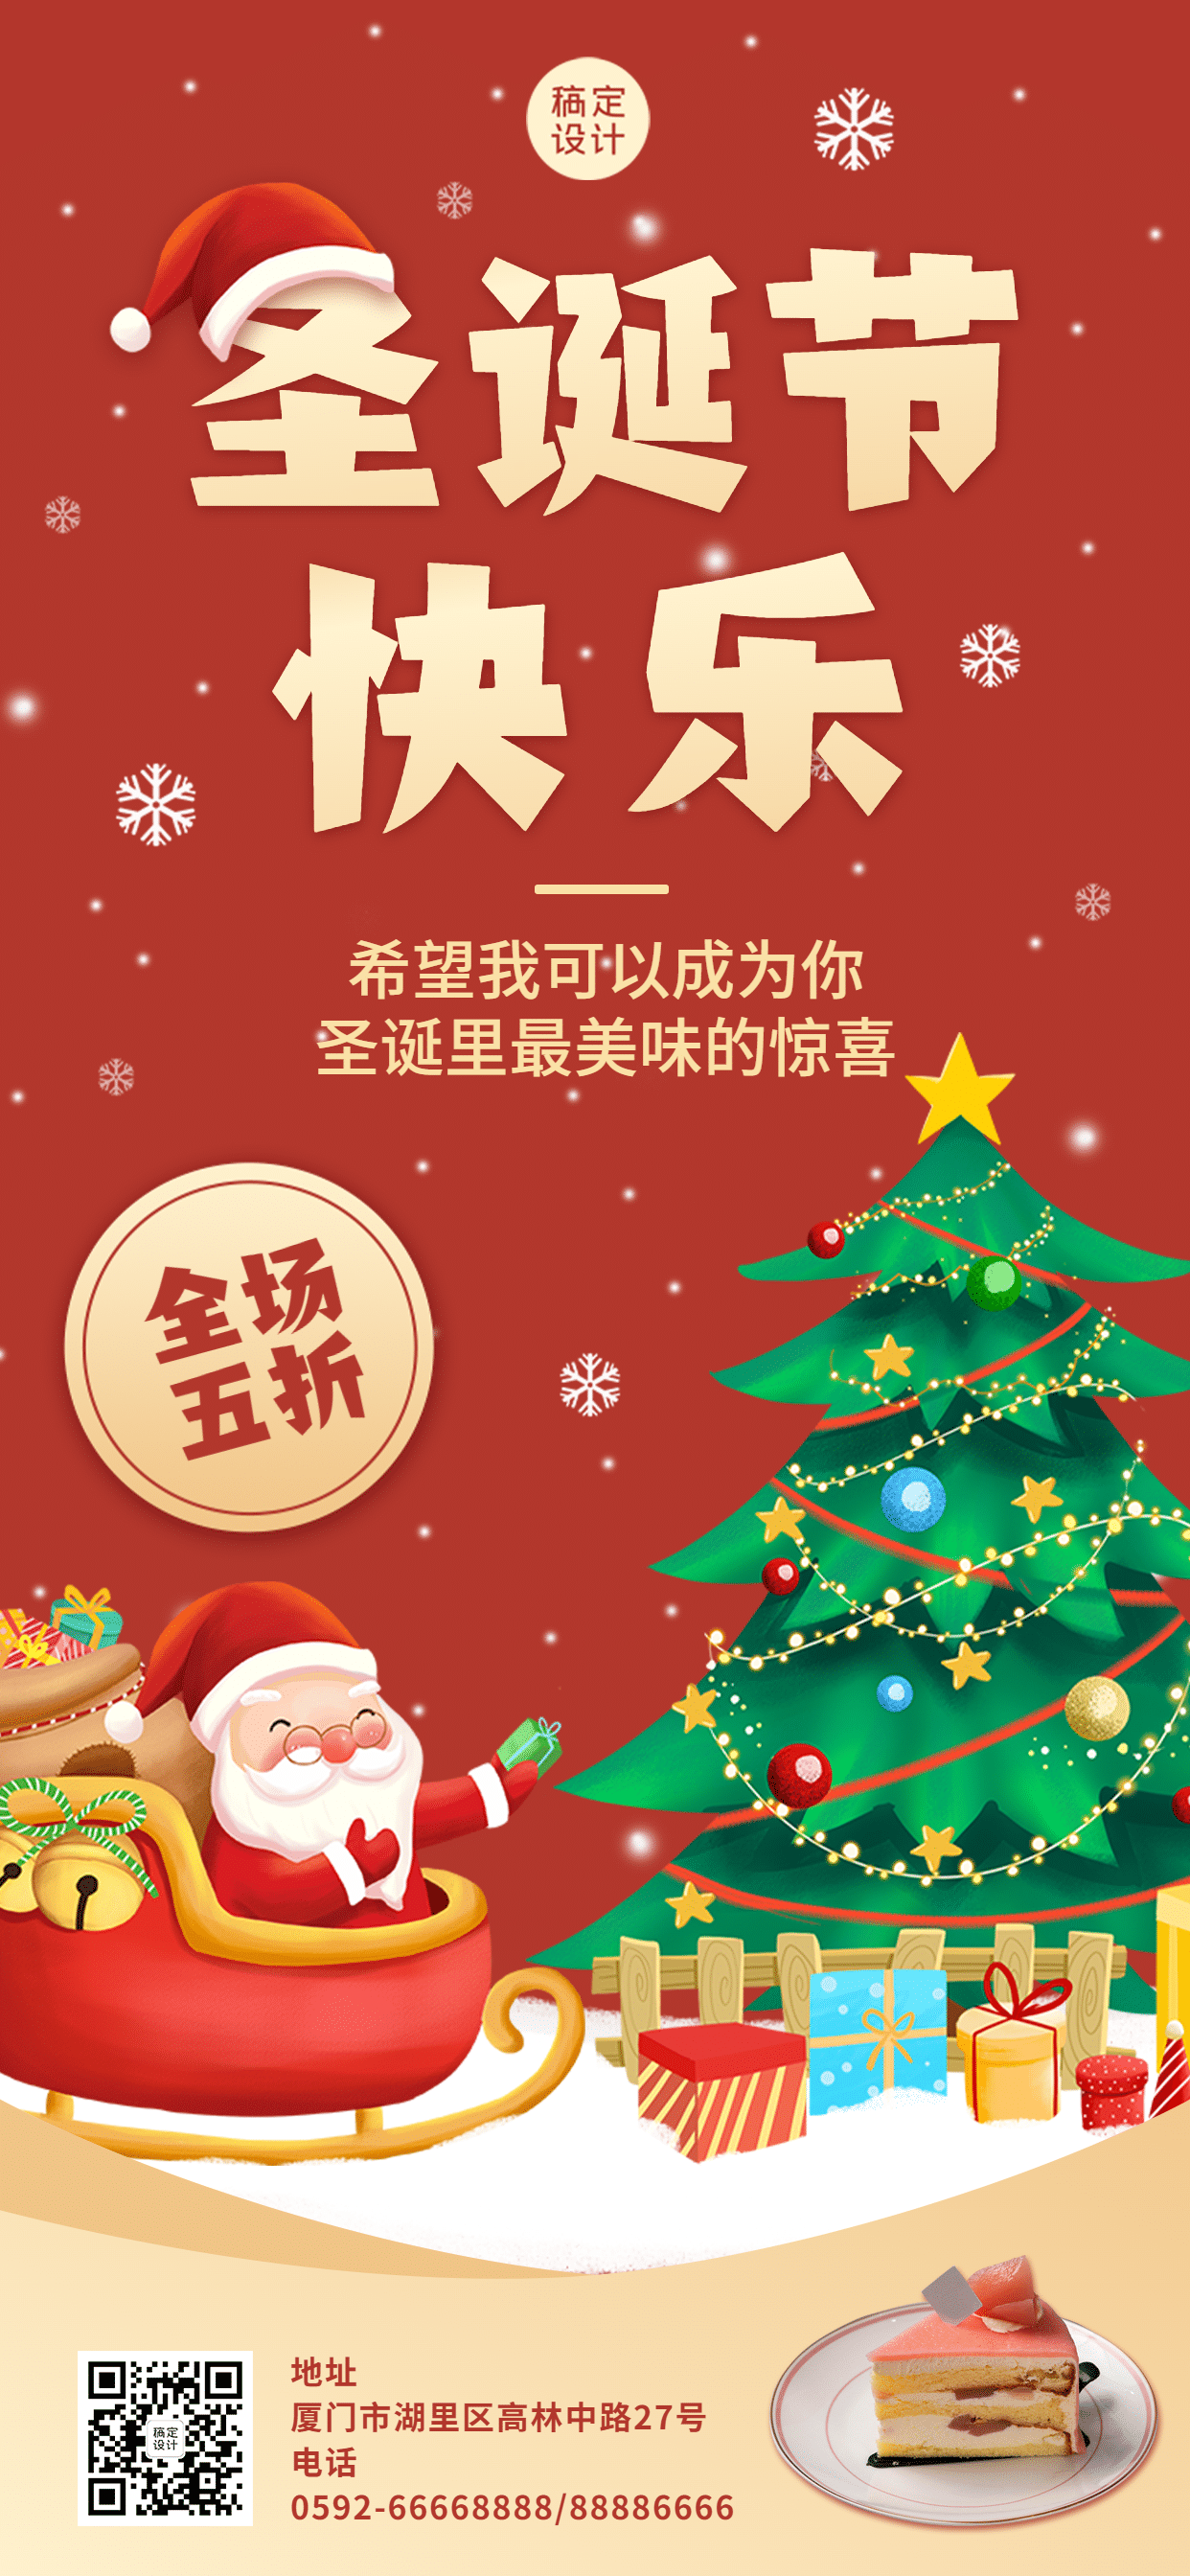 圣诞节烘焙甜品节日营销喜庆海报